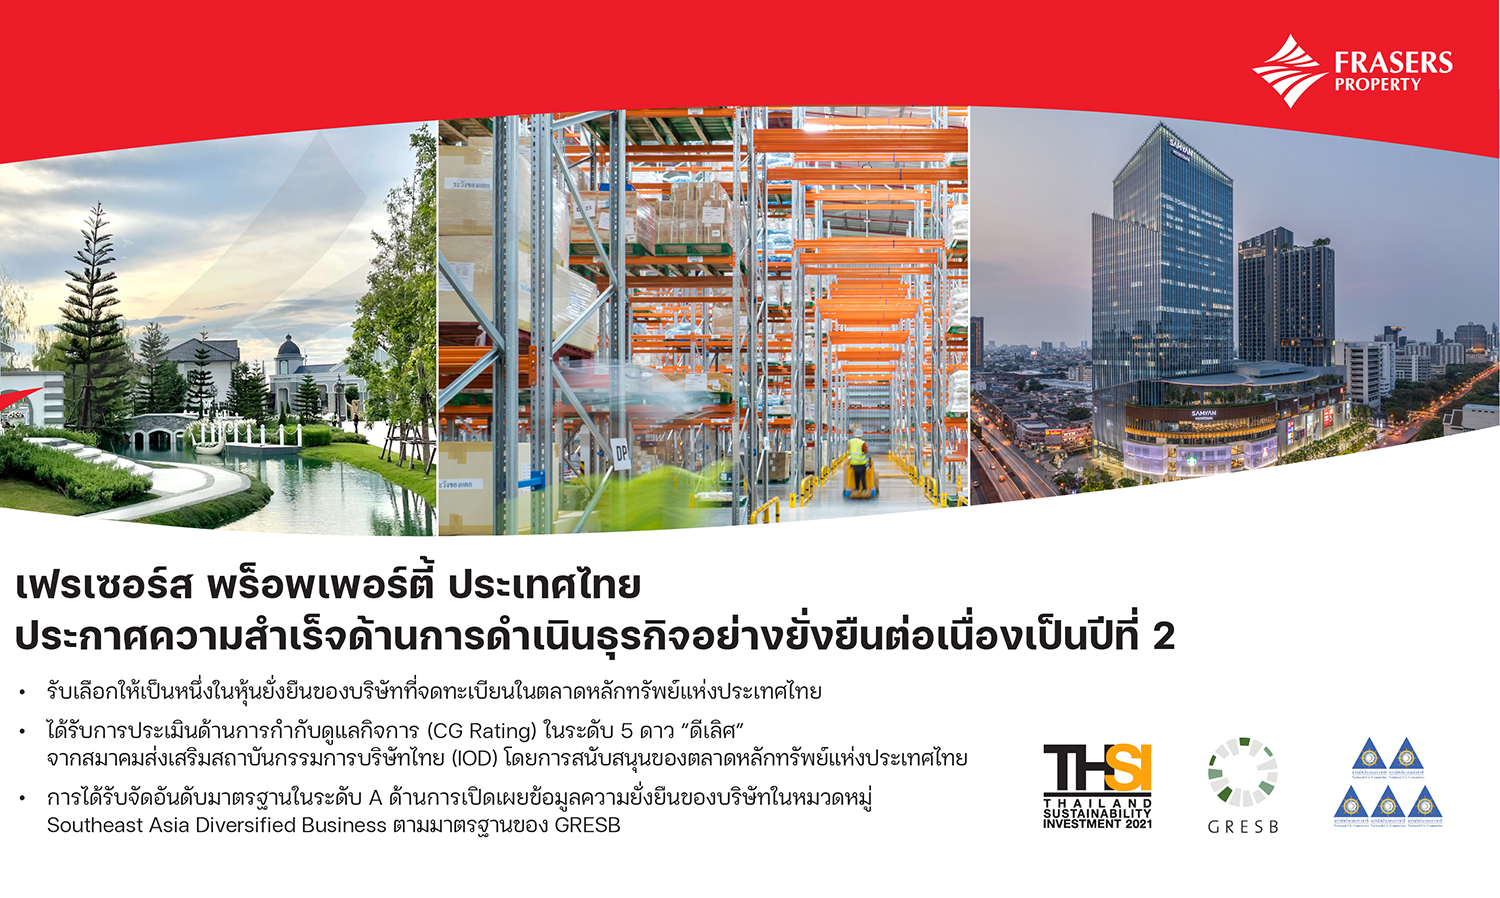 เฟรเซอร์ส พร็อพเพอร์ตี้ ประเทศไทย ประกาศความสำเร็จด้านการดำเนินธุรกิจอย่างยั่งยืนต่อเนื่องเป็นปีที่ 2